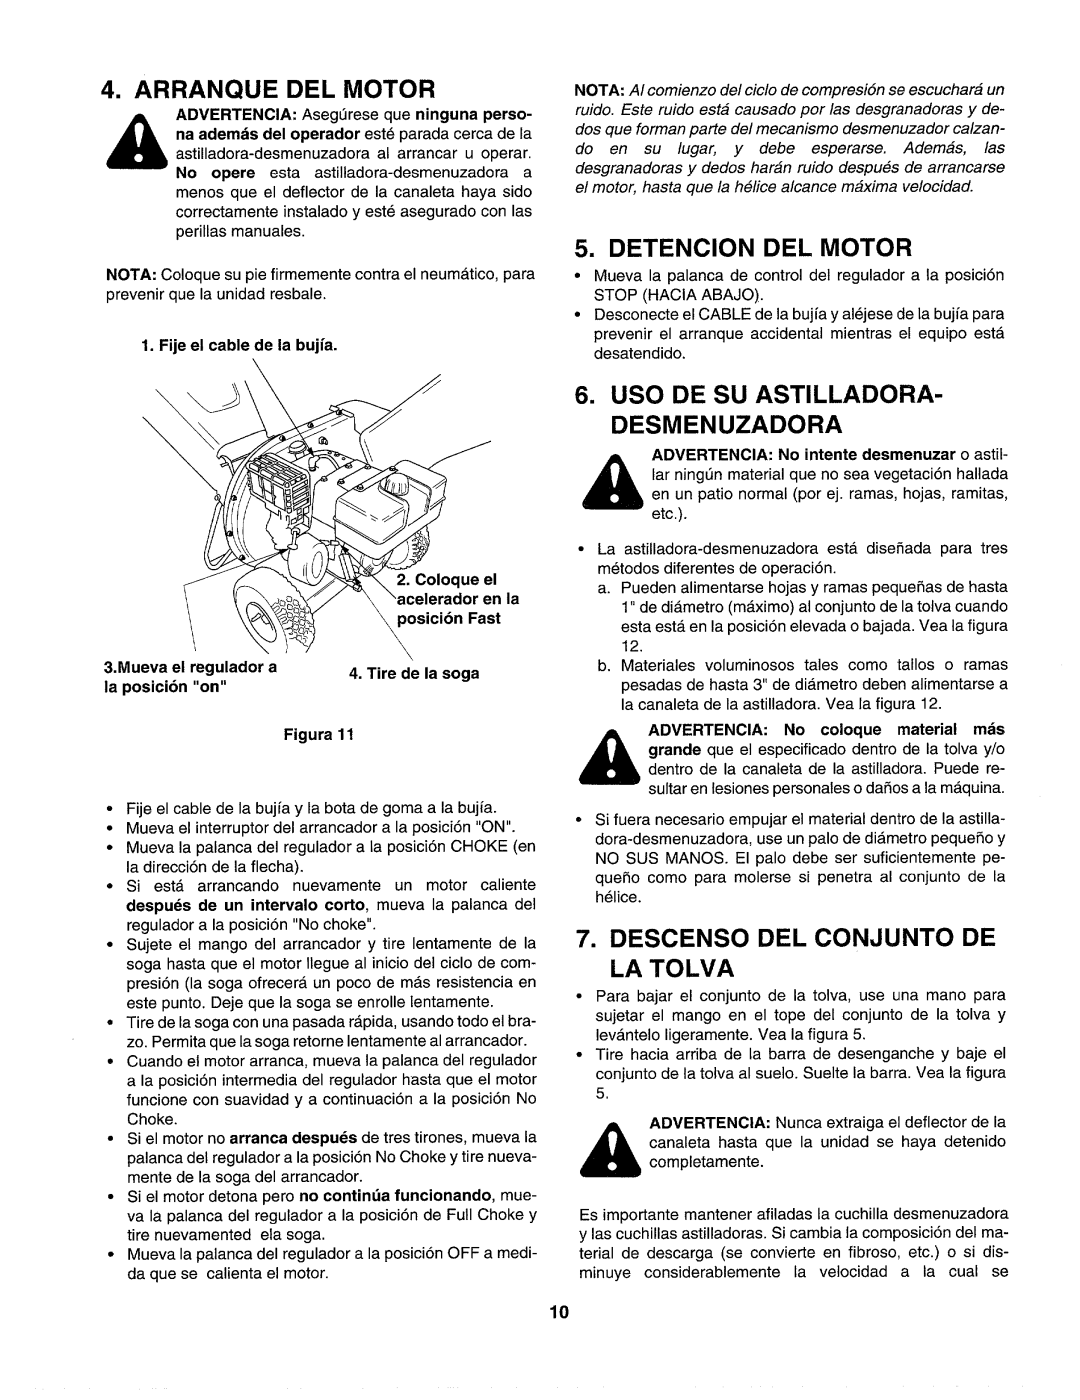 Craftsman 247.77586 manual Inla, Arranque Del Motor, Detencion Del Motor, Uso De Su Astilladora- Desmenuzadora, Figura 